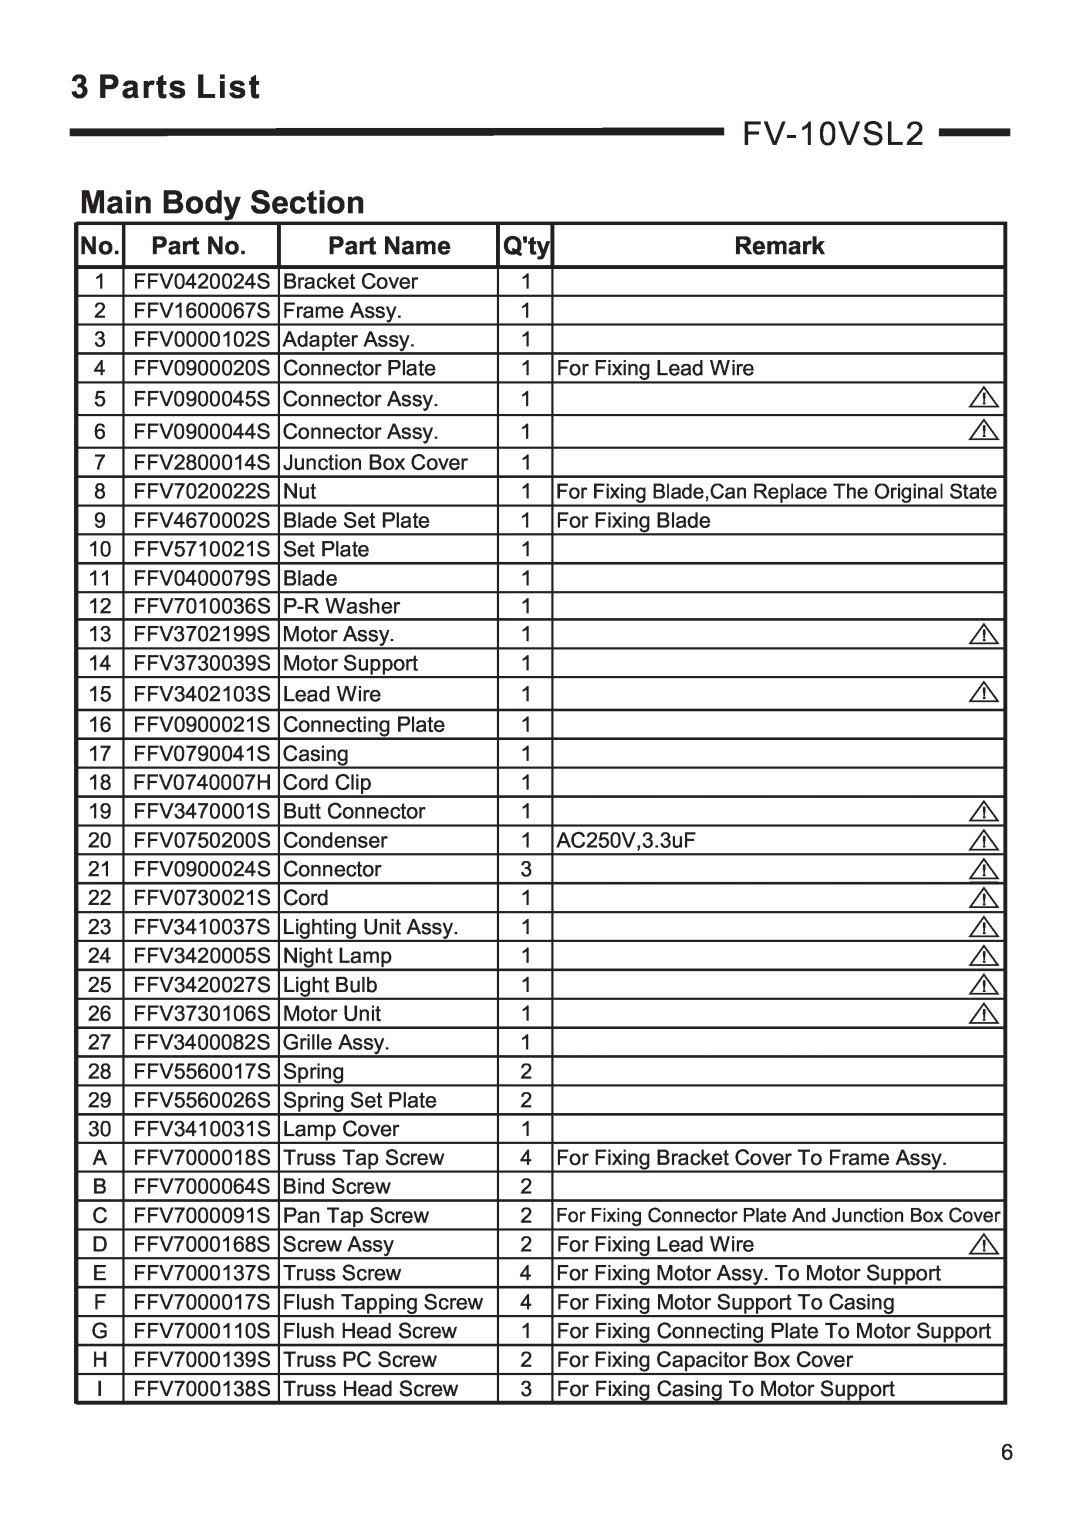 Panasonic FV-10VSL2, FV-08vsl2 service manual Parts List, Main Body Section, Part Name, Remark 